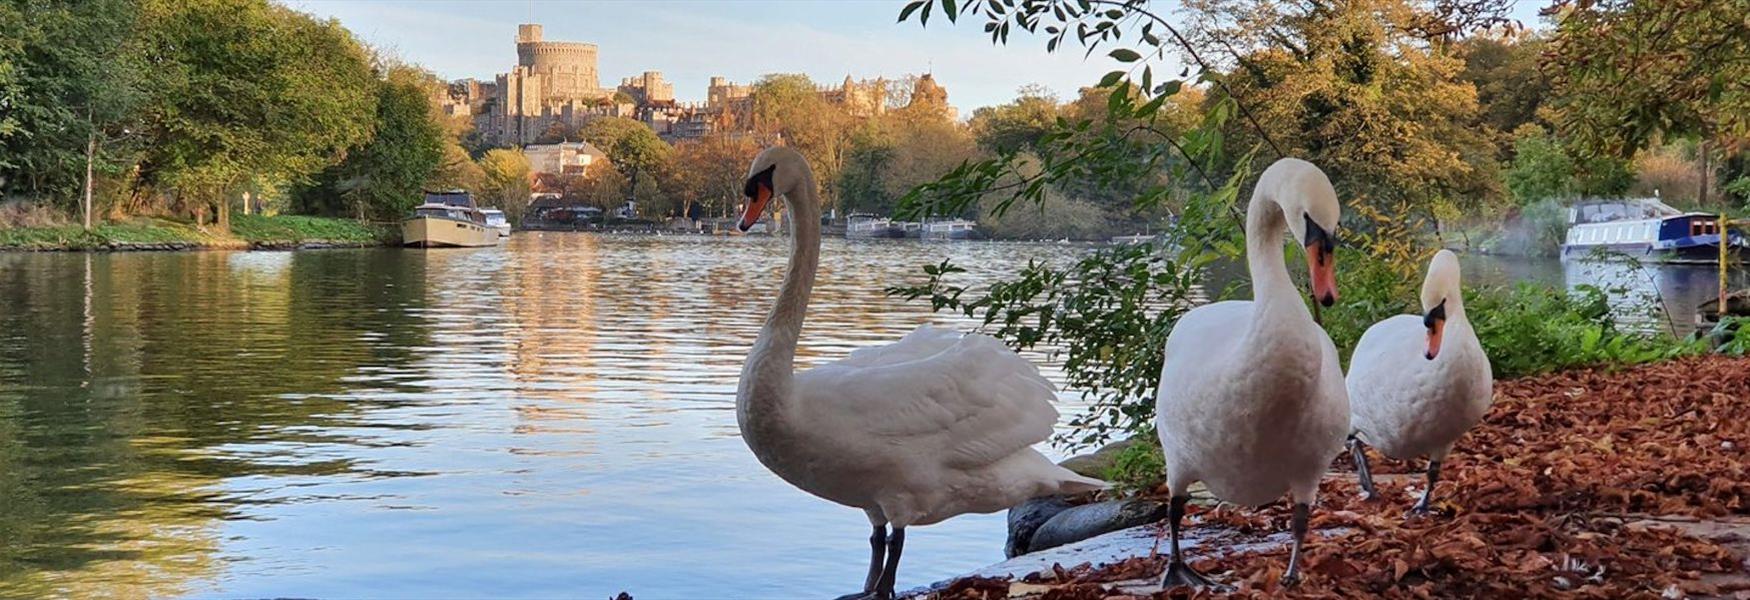 Autumn swans on Baths Island